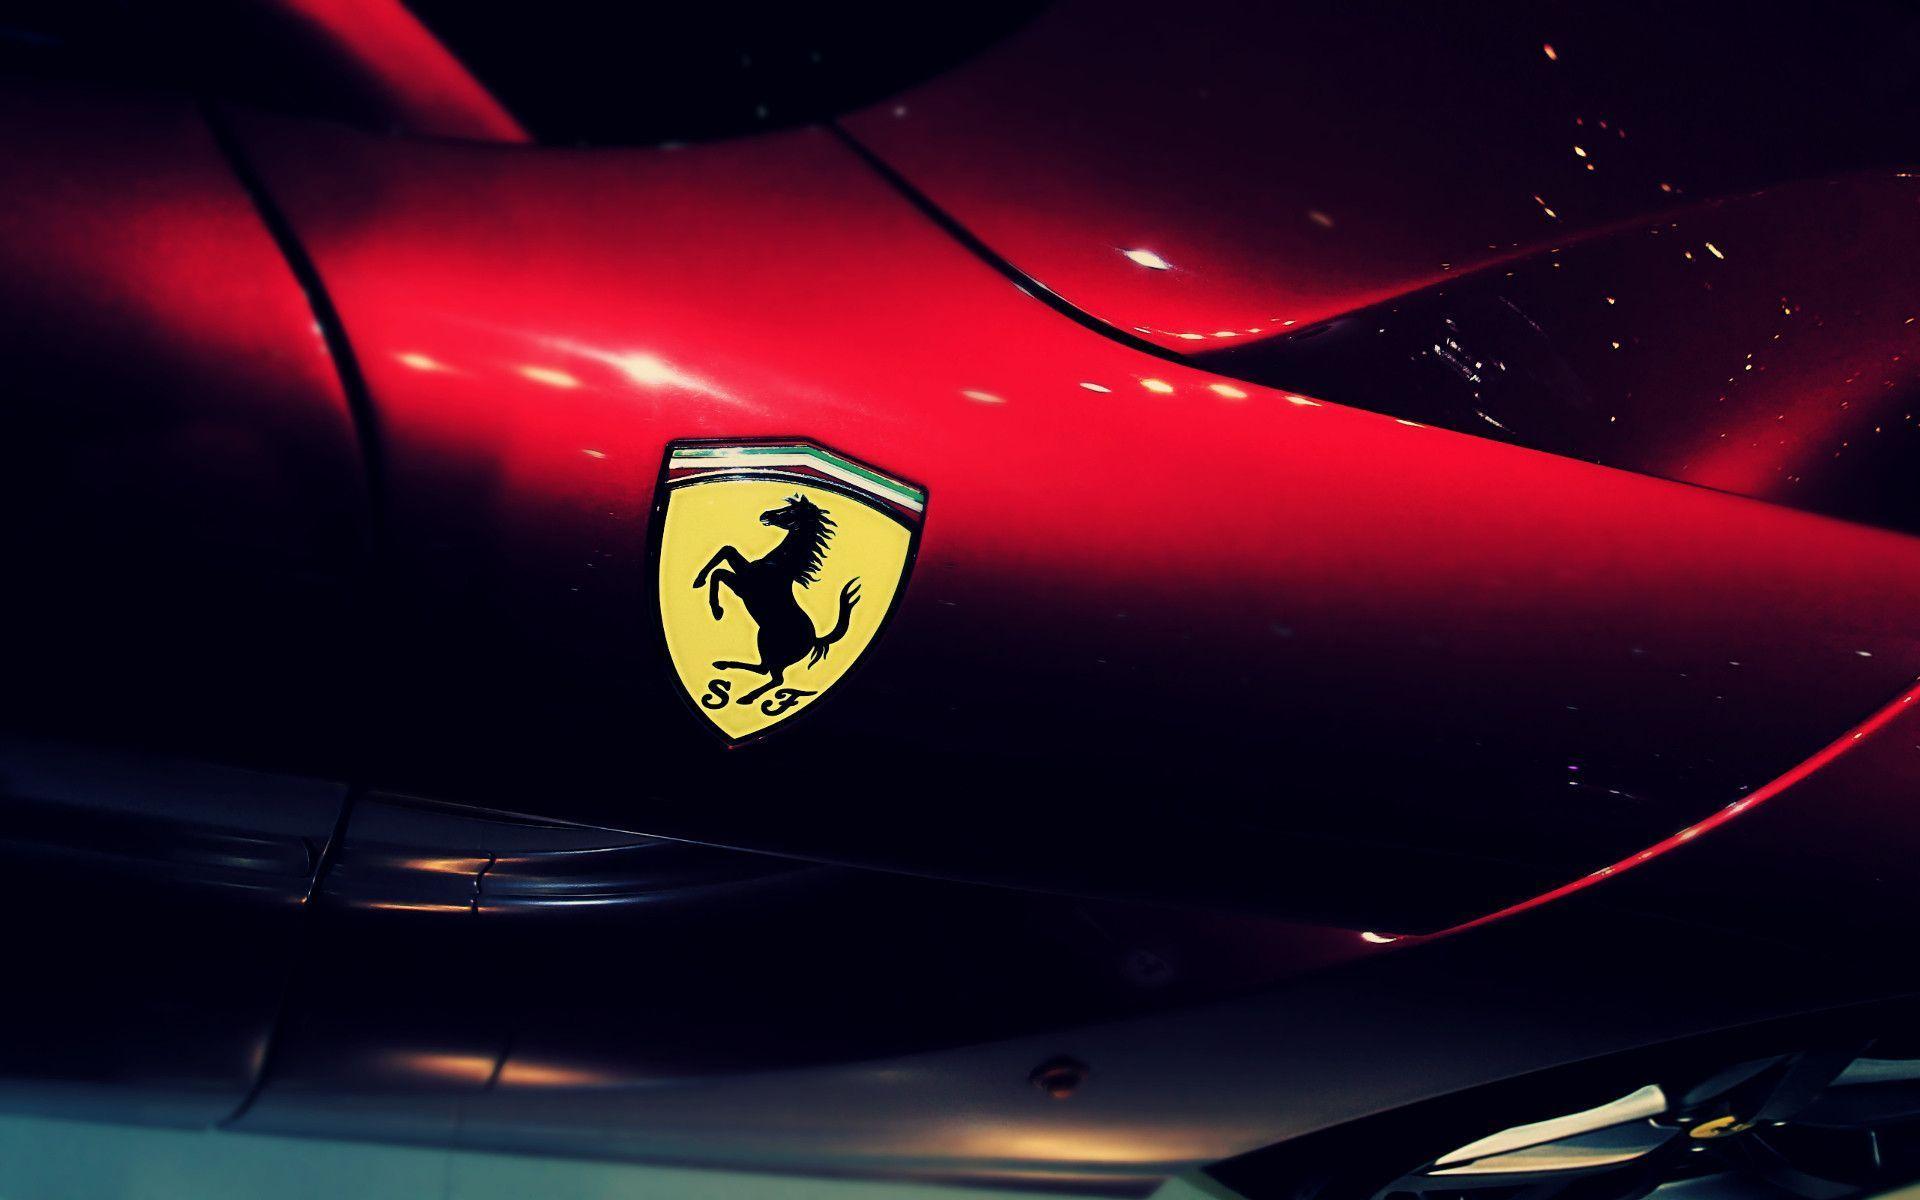 Ferrari Wallpaper Full HD. Cars. Cars, Ferrari logo